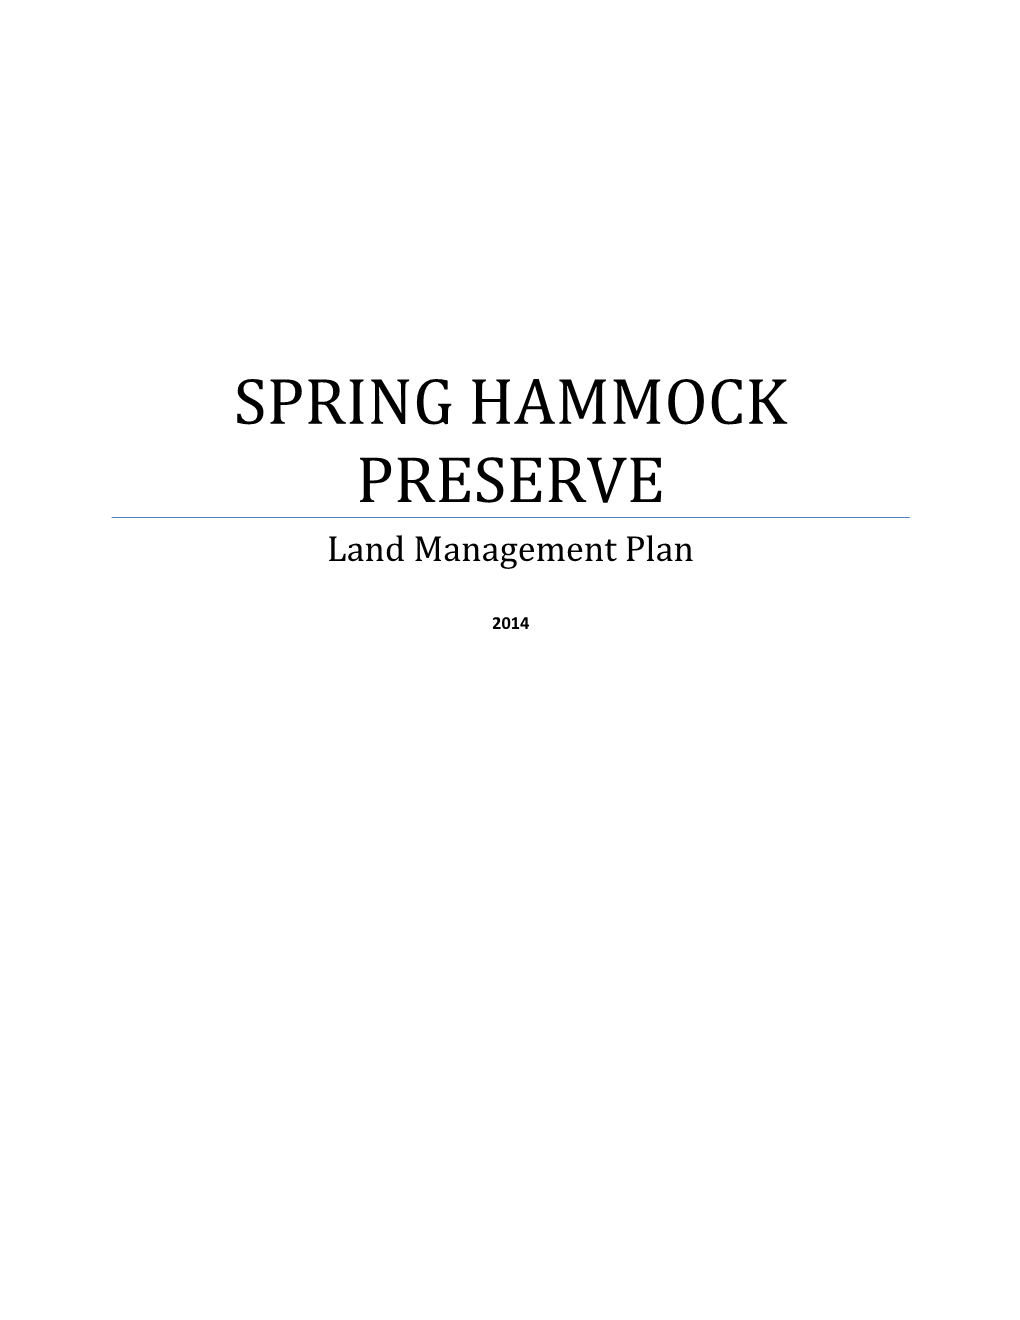 SPRING HAMMOCK PRESERVE Land Management Plan